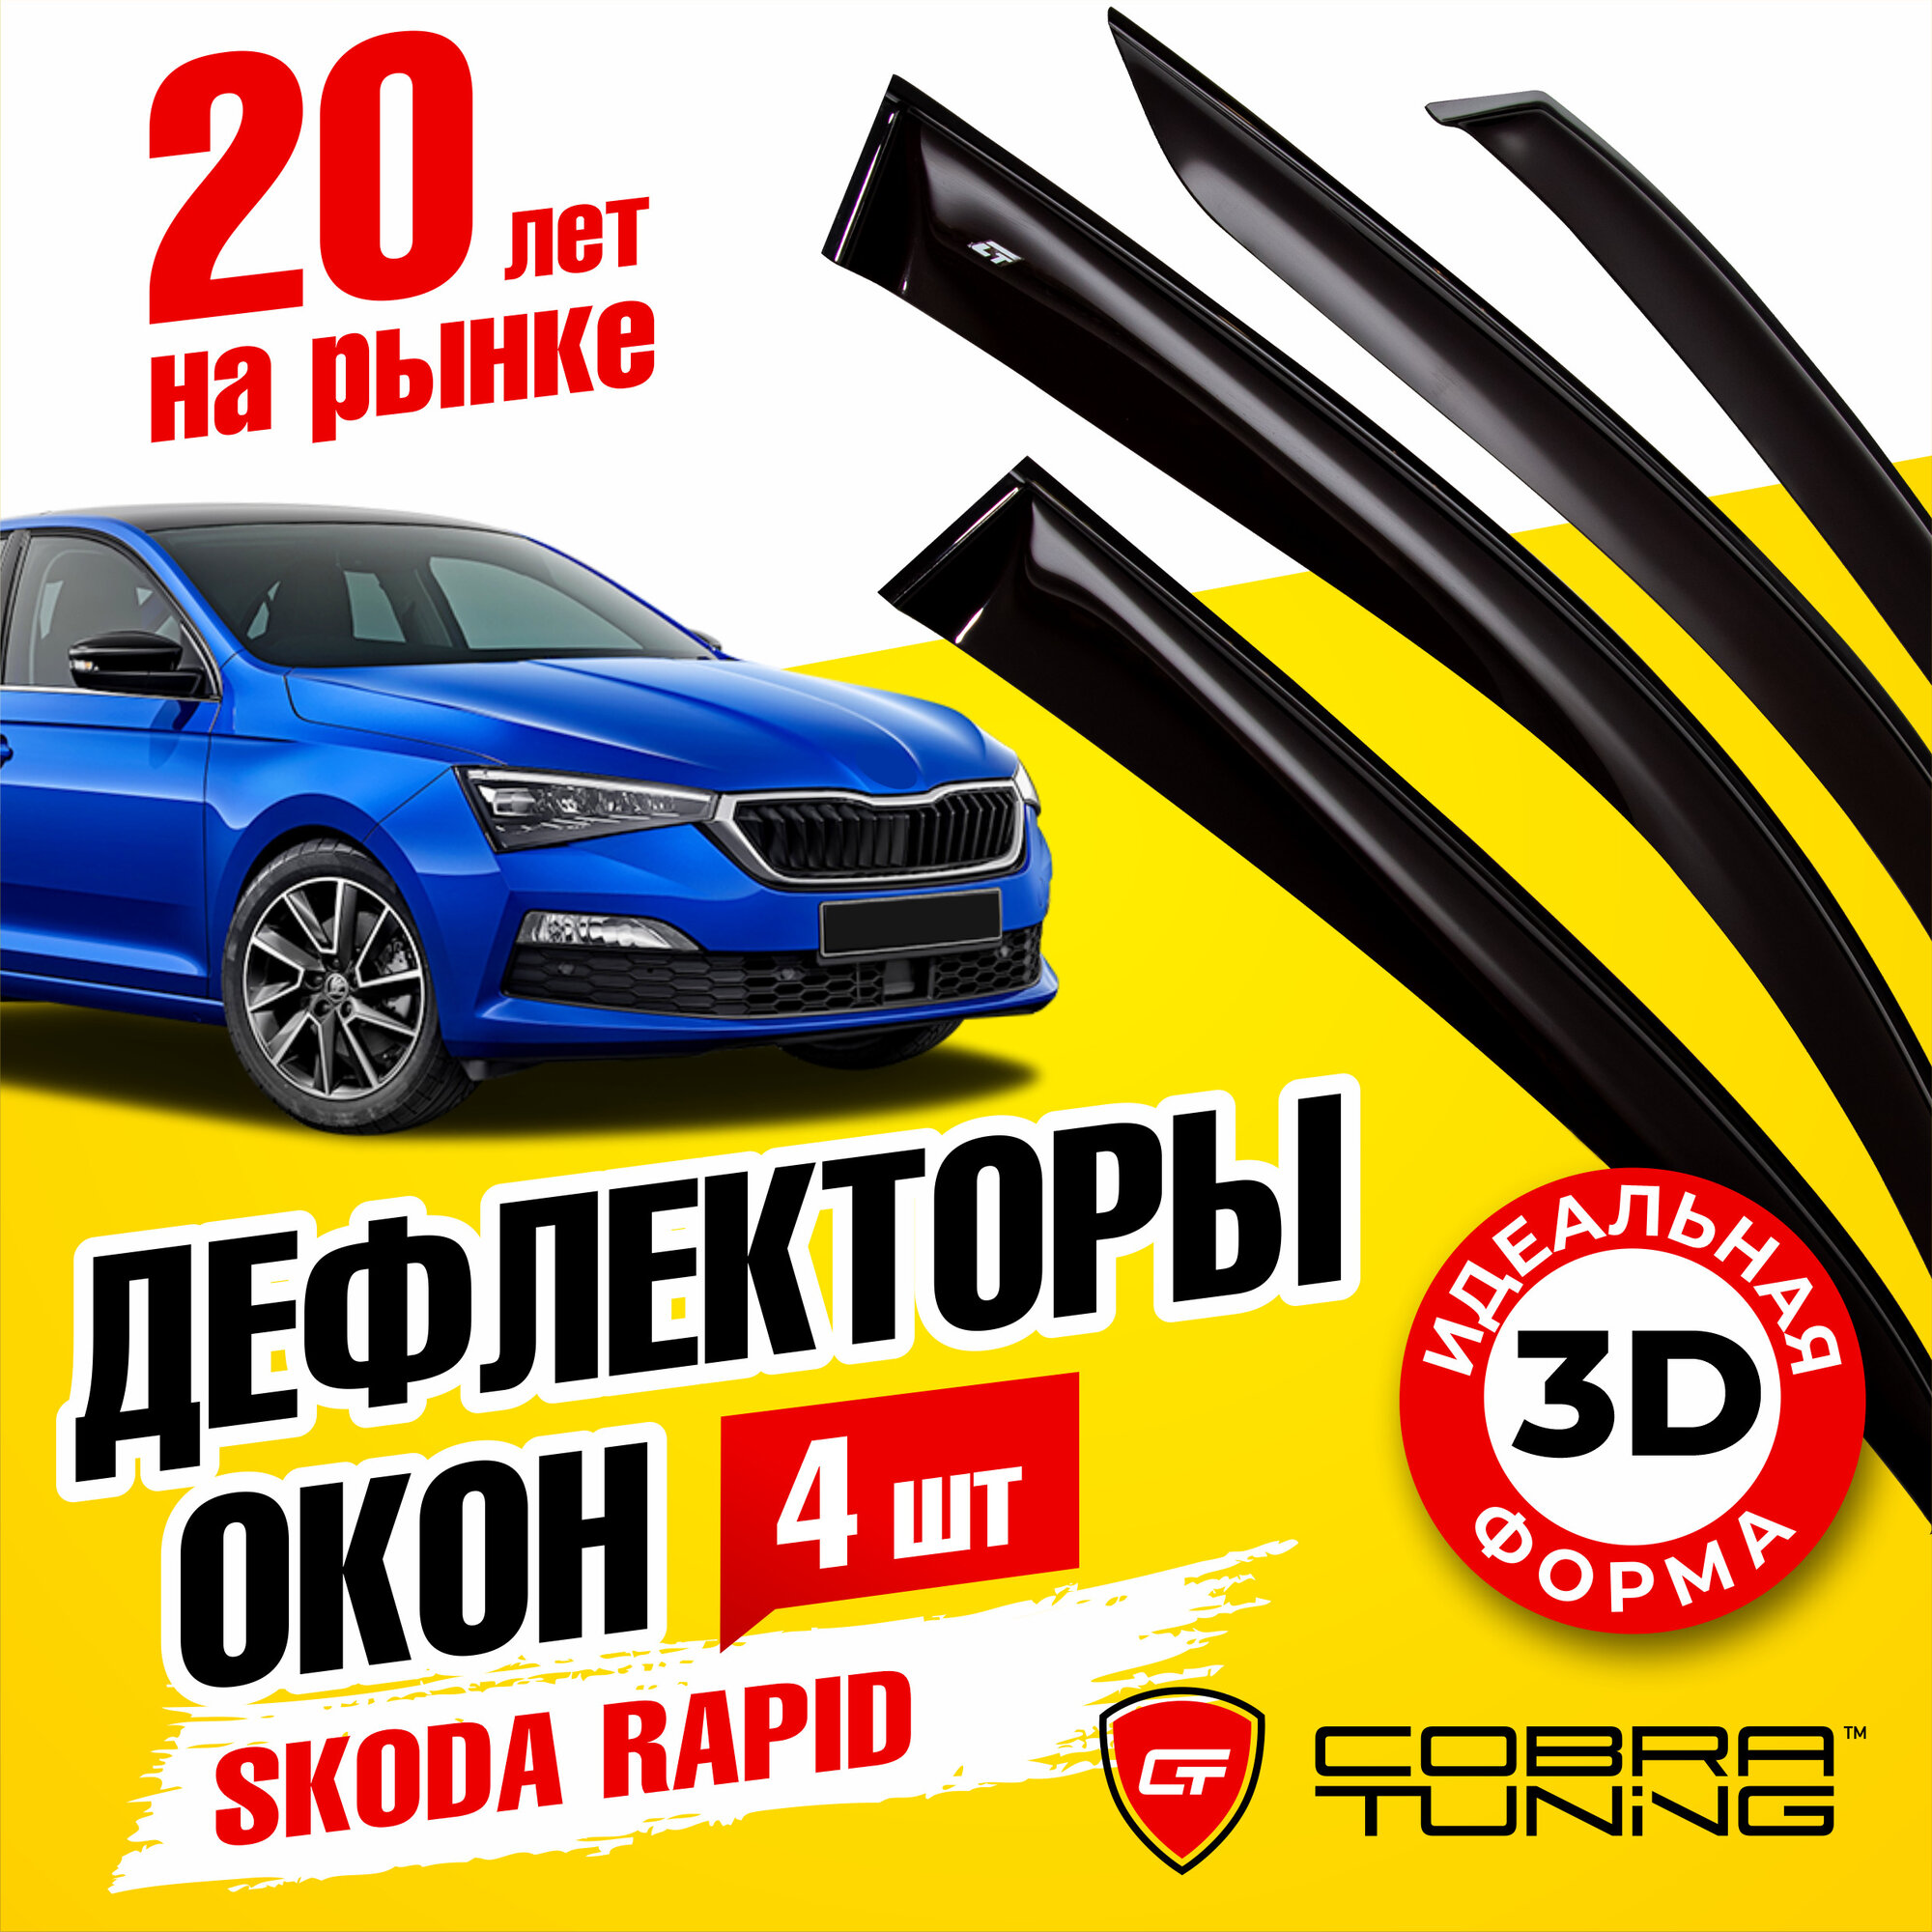 Дефлекторы боковых окон для Skoda Rapid 2 (Шкода Рапид) 2020-2022 ветровики с хром молдингом Cobra Tuning